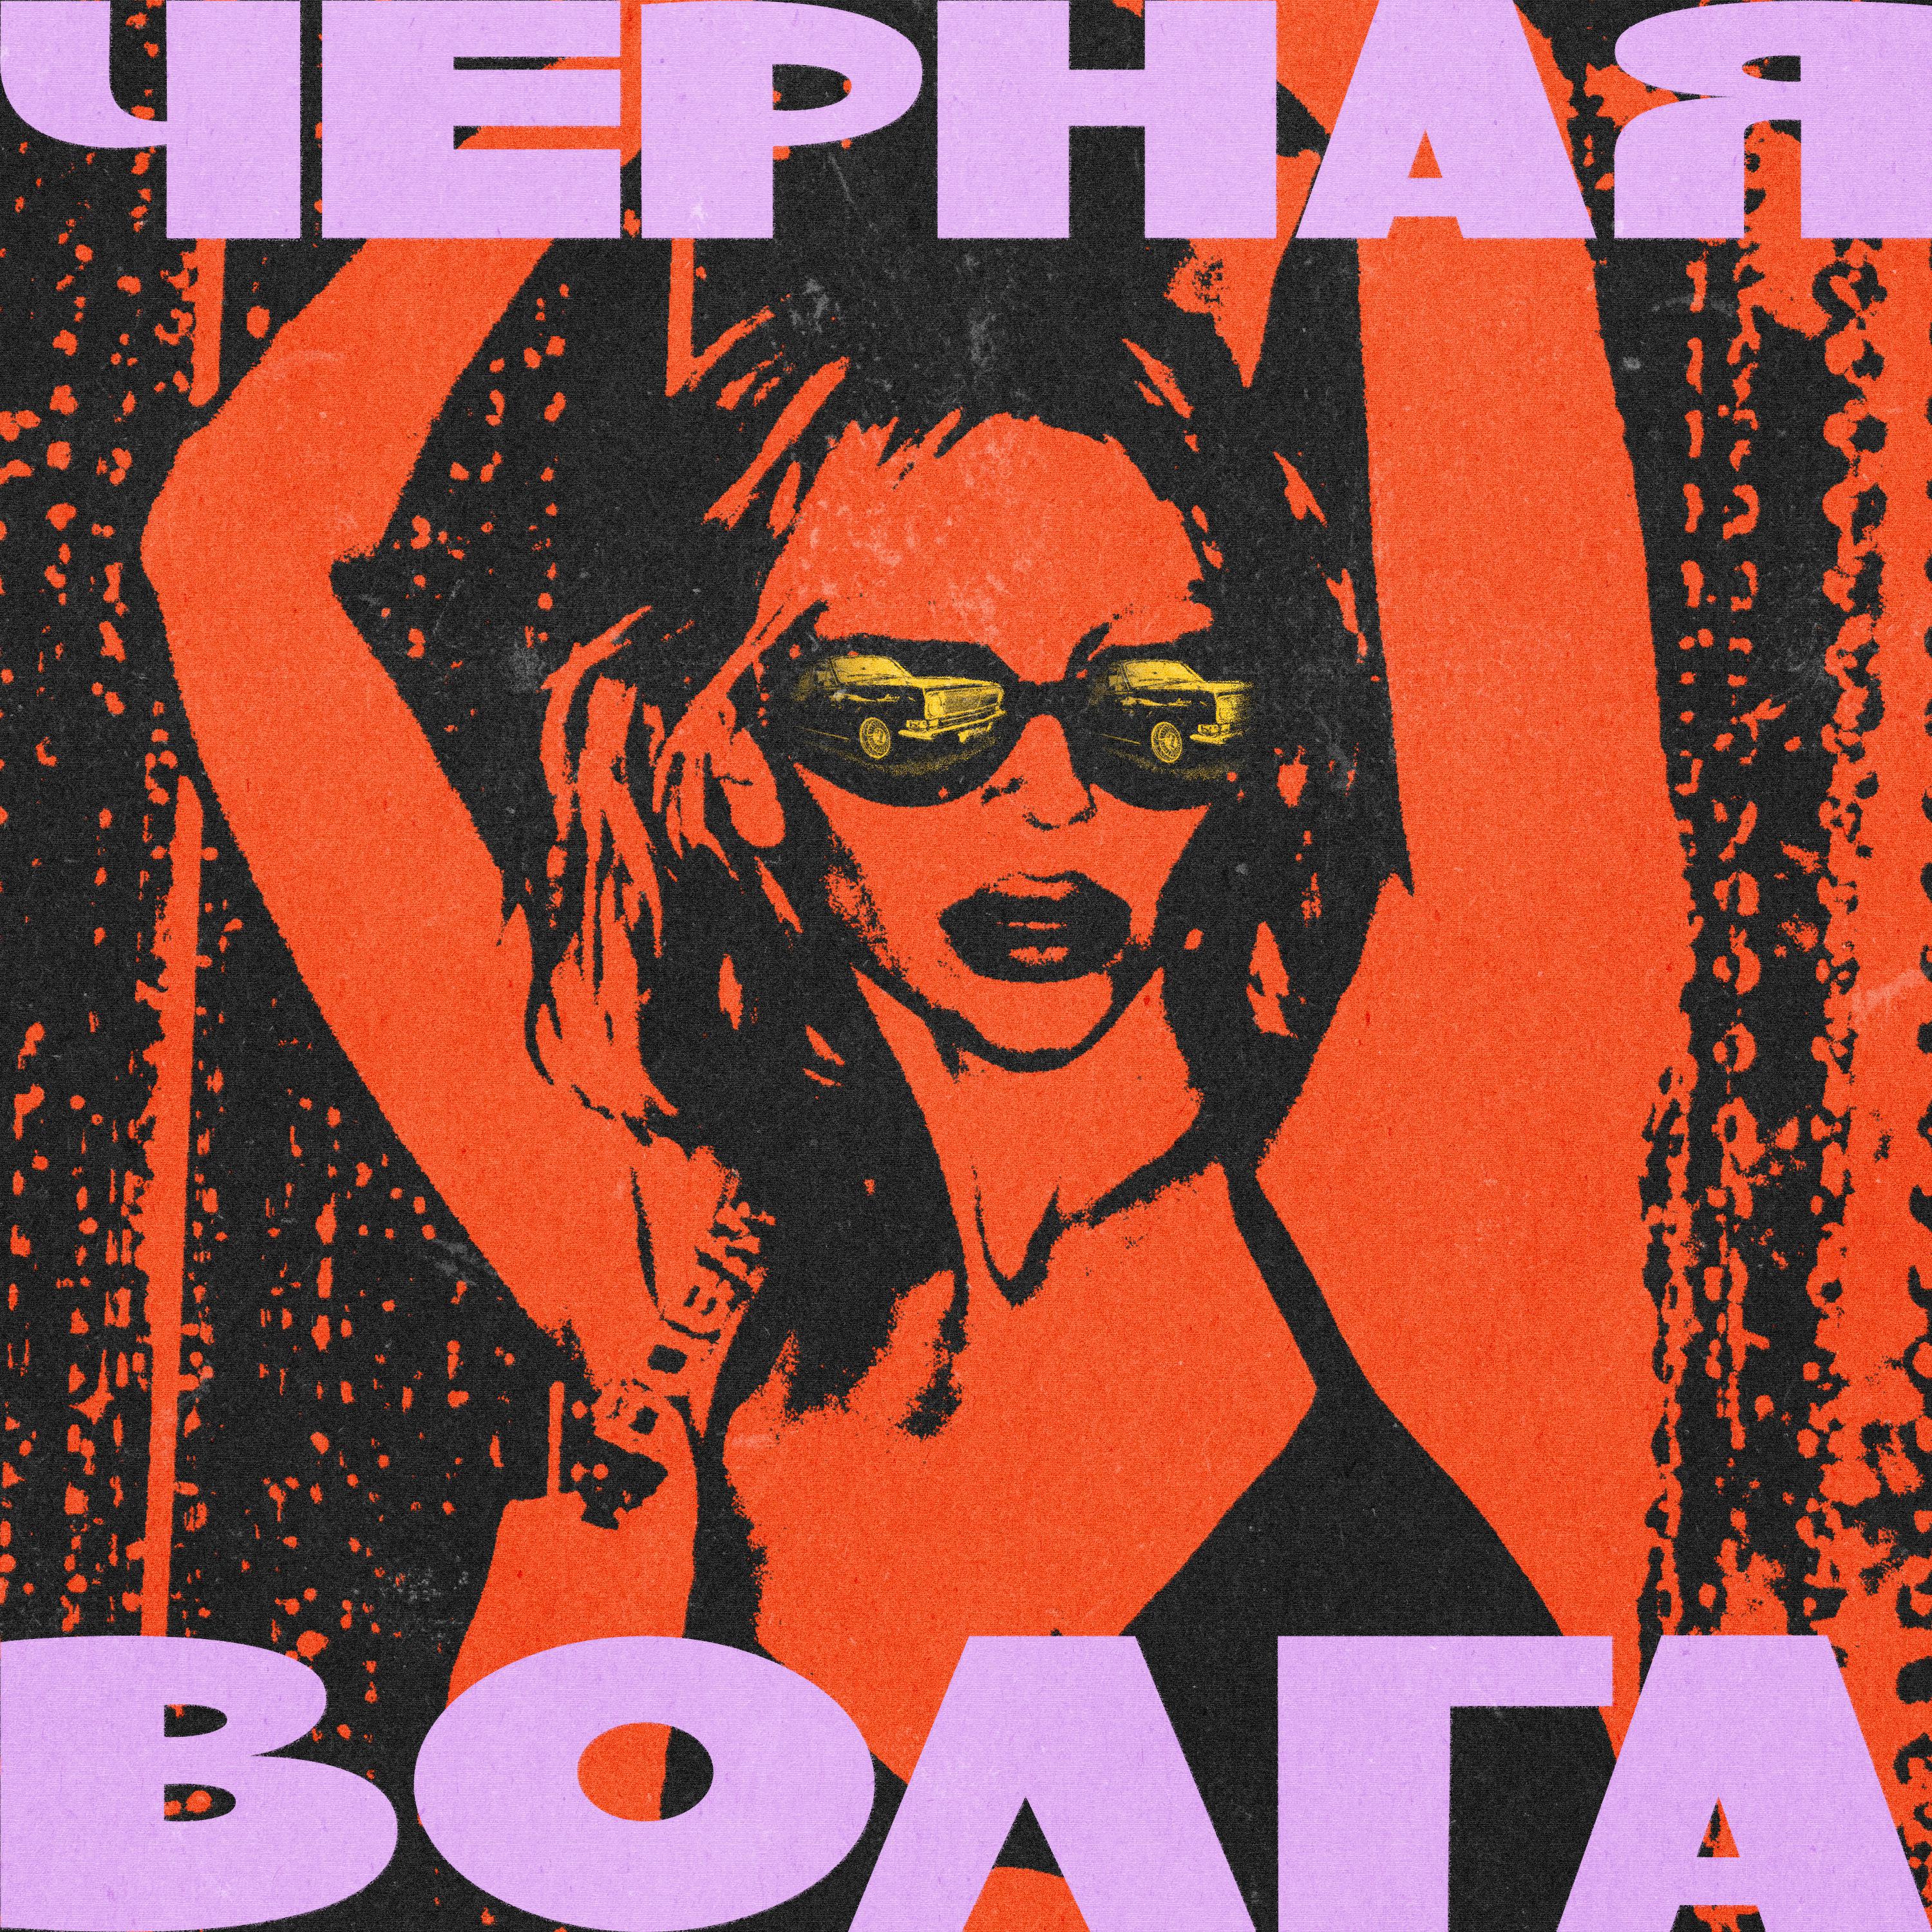 Постер альбома Чёрная Волга